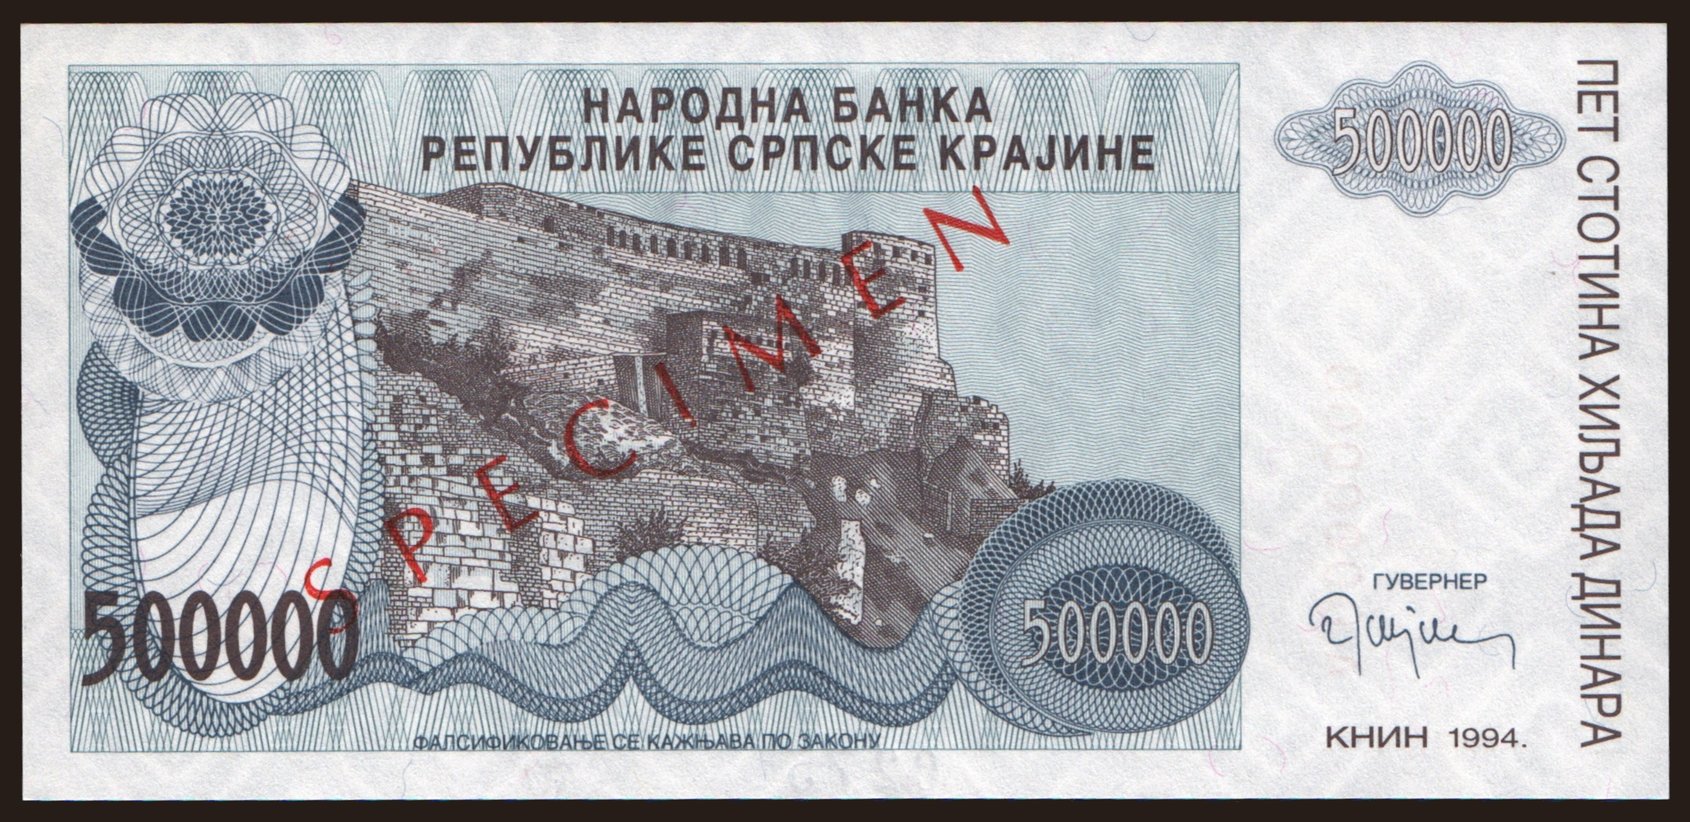 RSK, 50.000 dinara, 1994, SPECIMEN